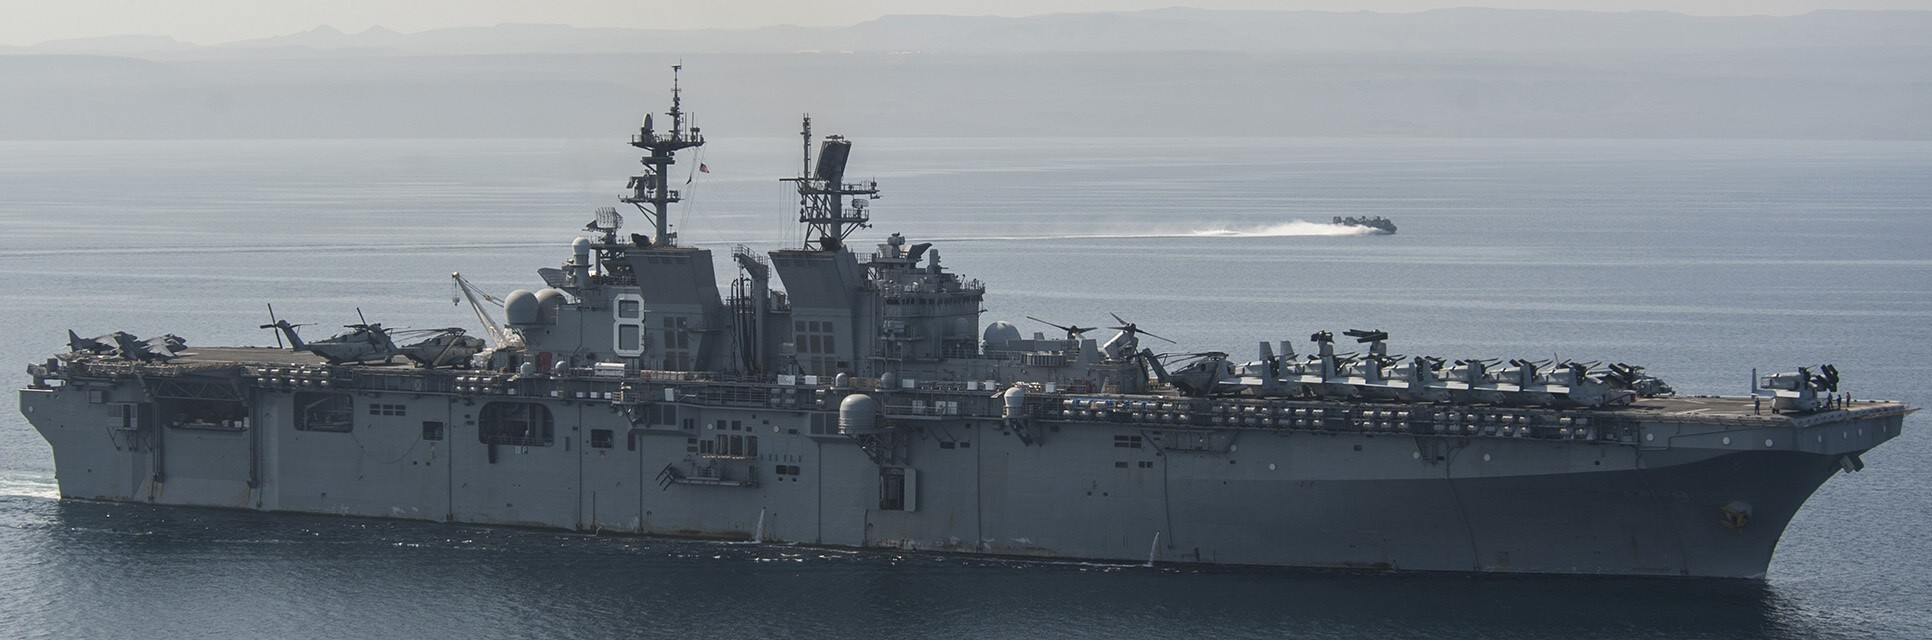 lhd-8 uss makin island amphibious assault ship landing helicopter dock us navy vmm-163 marines 5th fleet aor 102